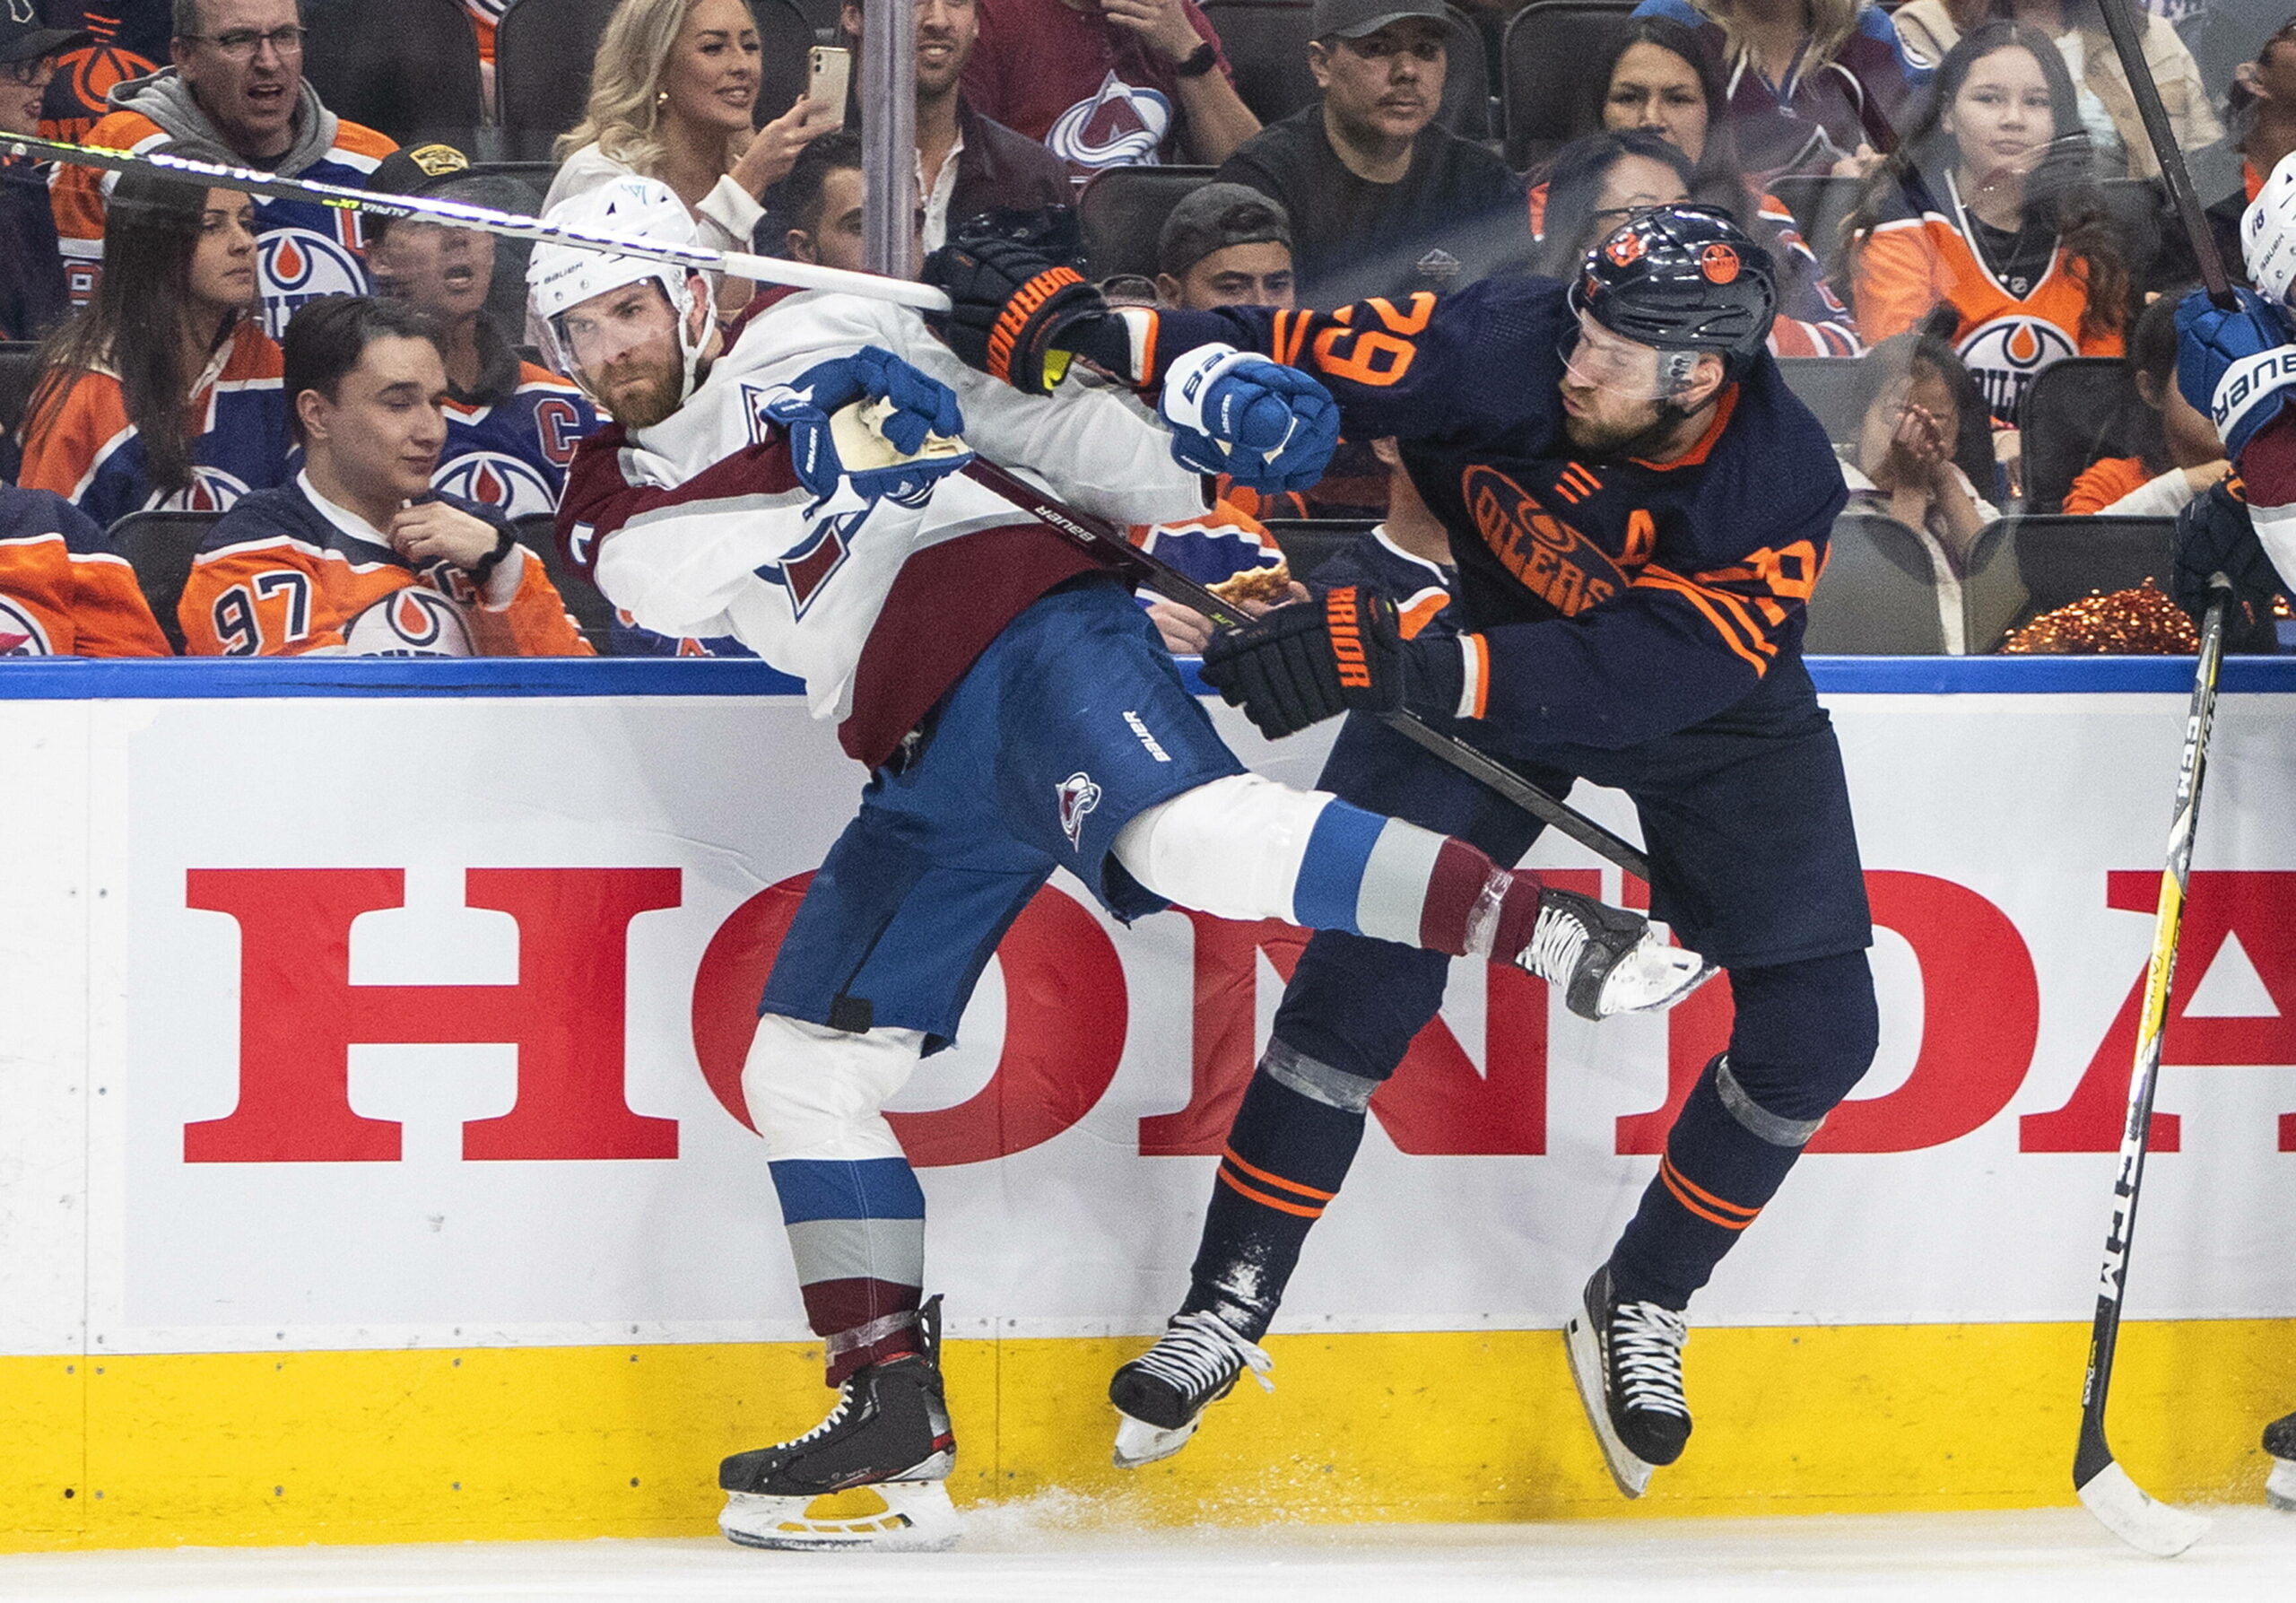 Trotz einer umkämpften Partie scheitern Leon Draisaitl und die Oilers im Halbfinale des Stanley Cups